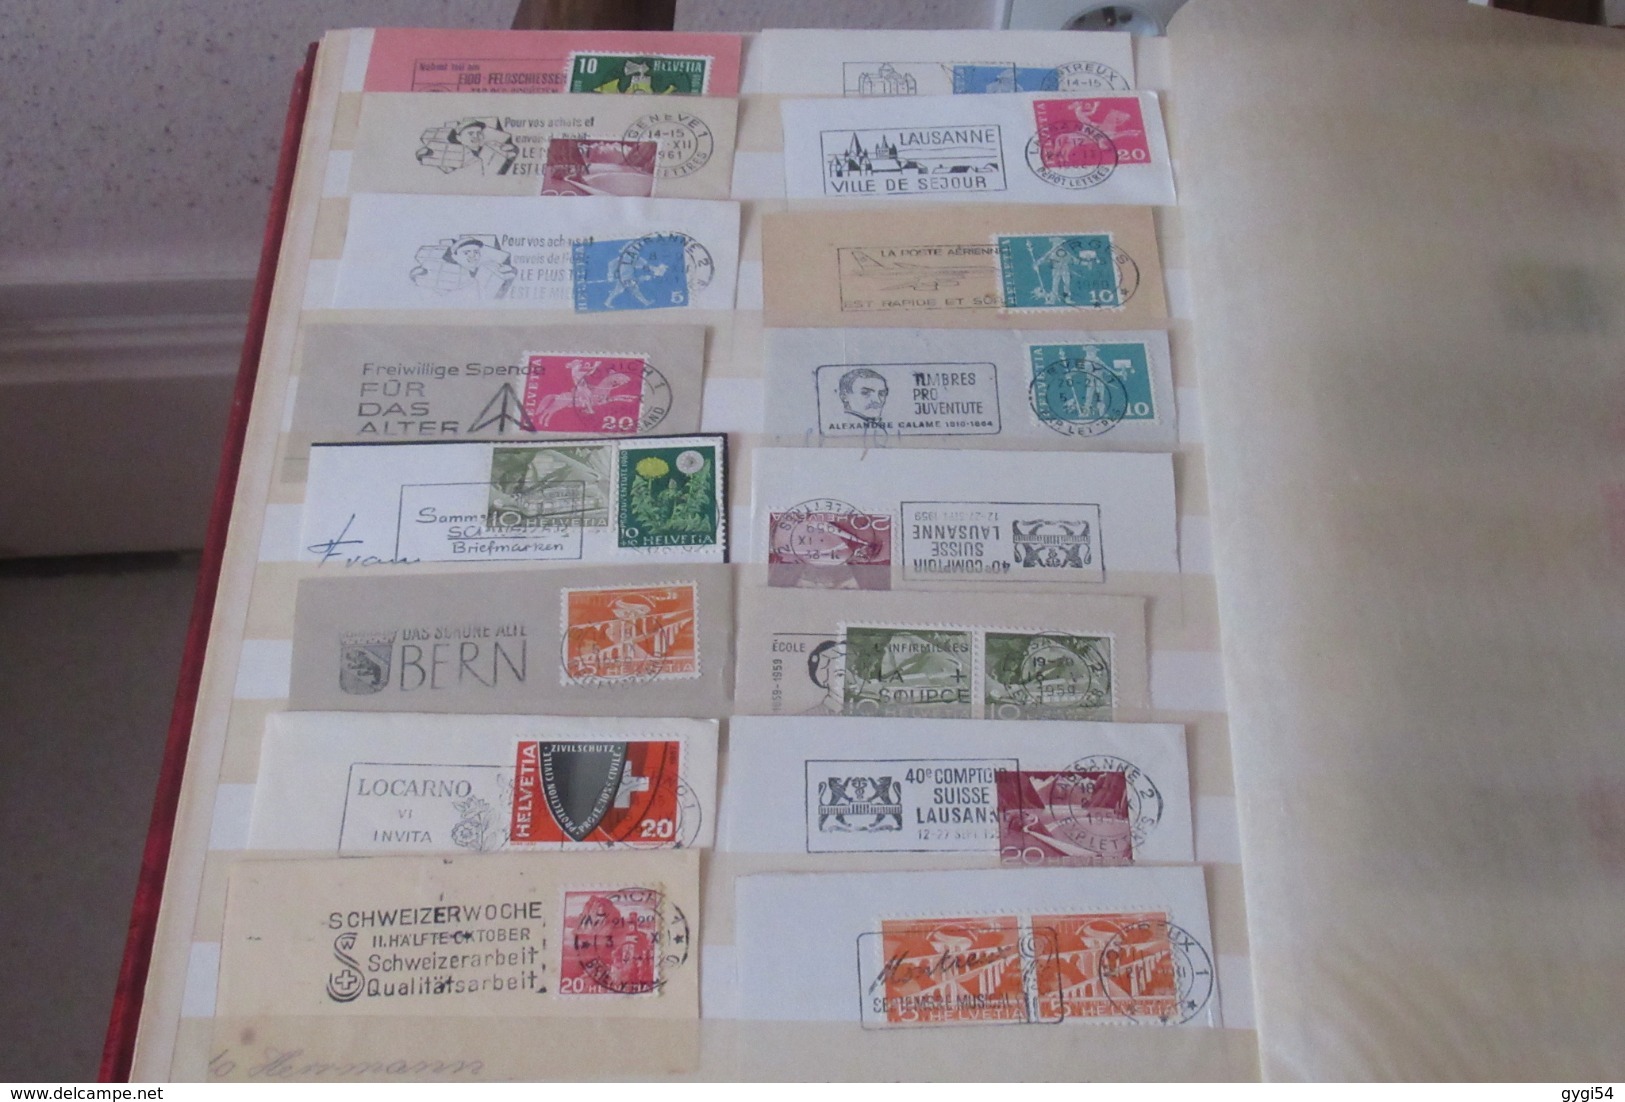 France et Suisse dans un classeur de  32 pages  lot, de timbres oblitérés et Flammes   33   scans